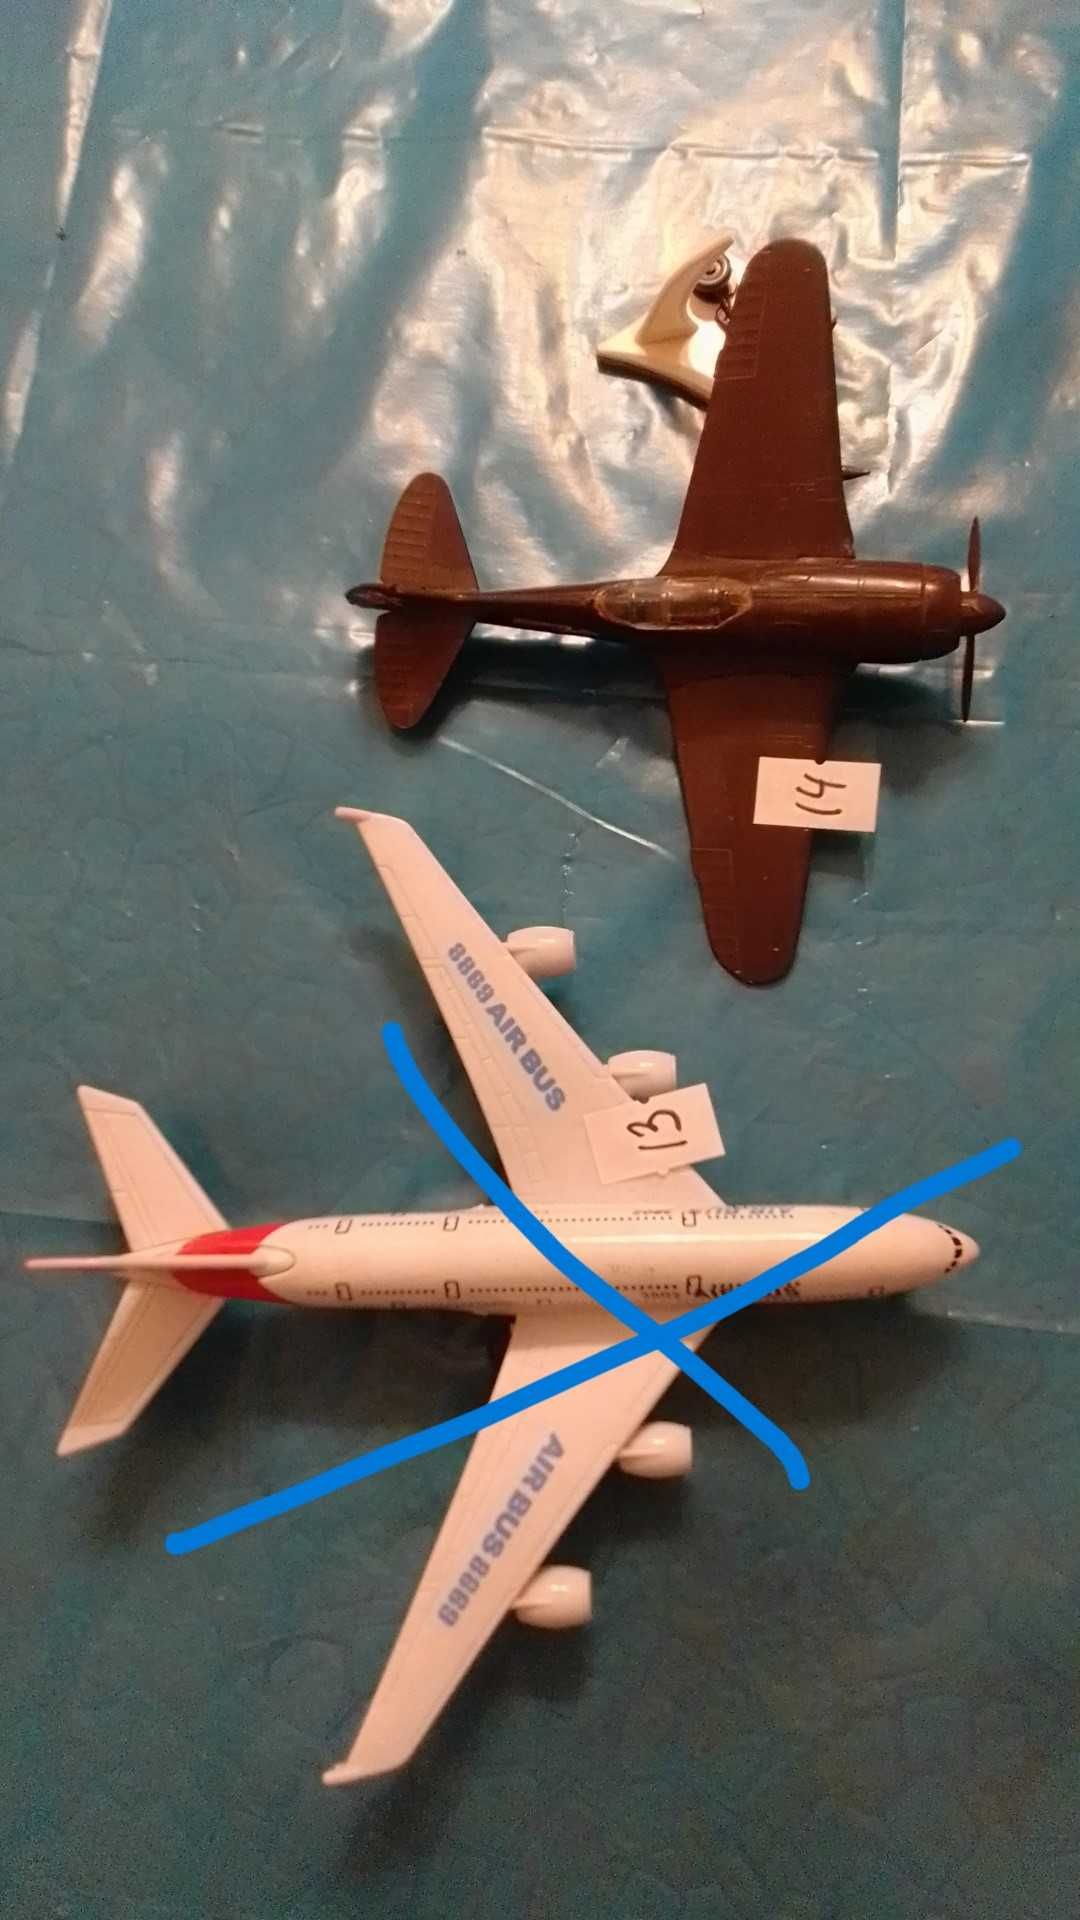 Модели самолетов, вертолетов